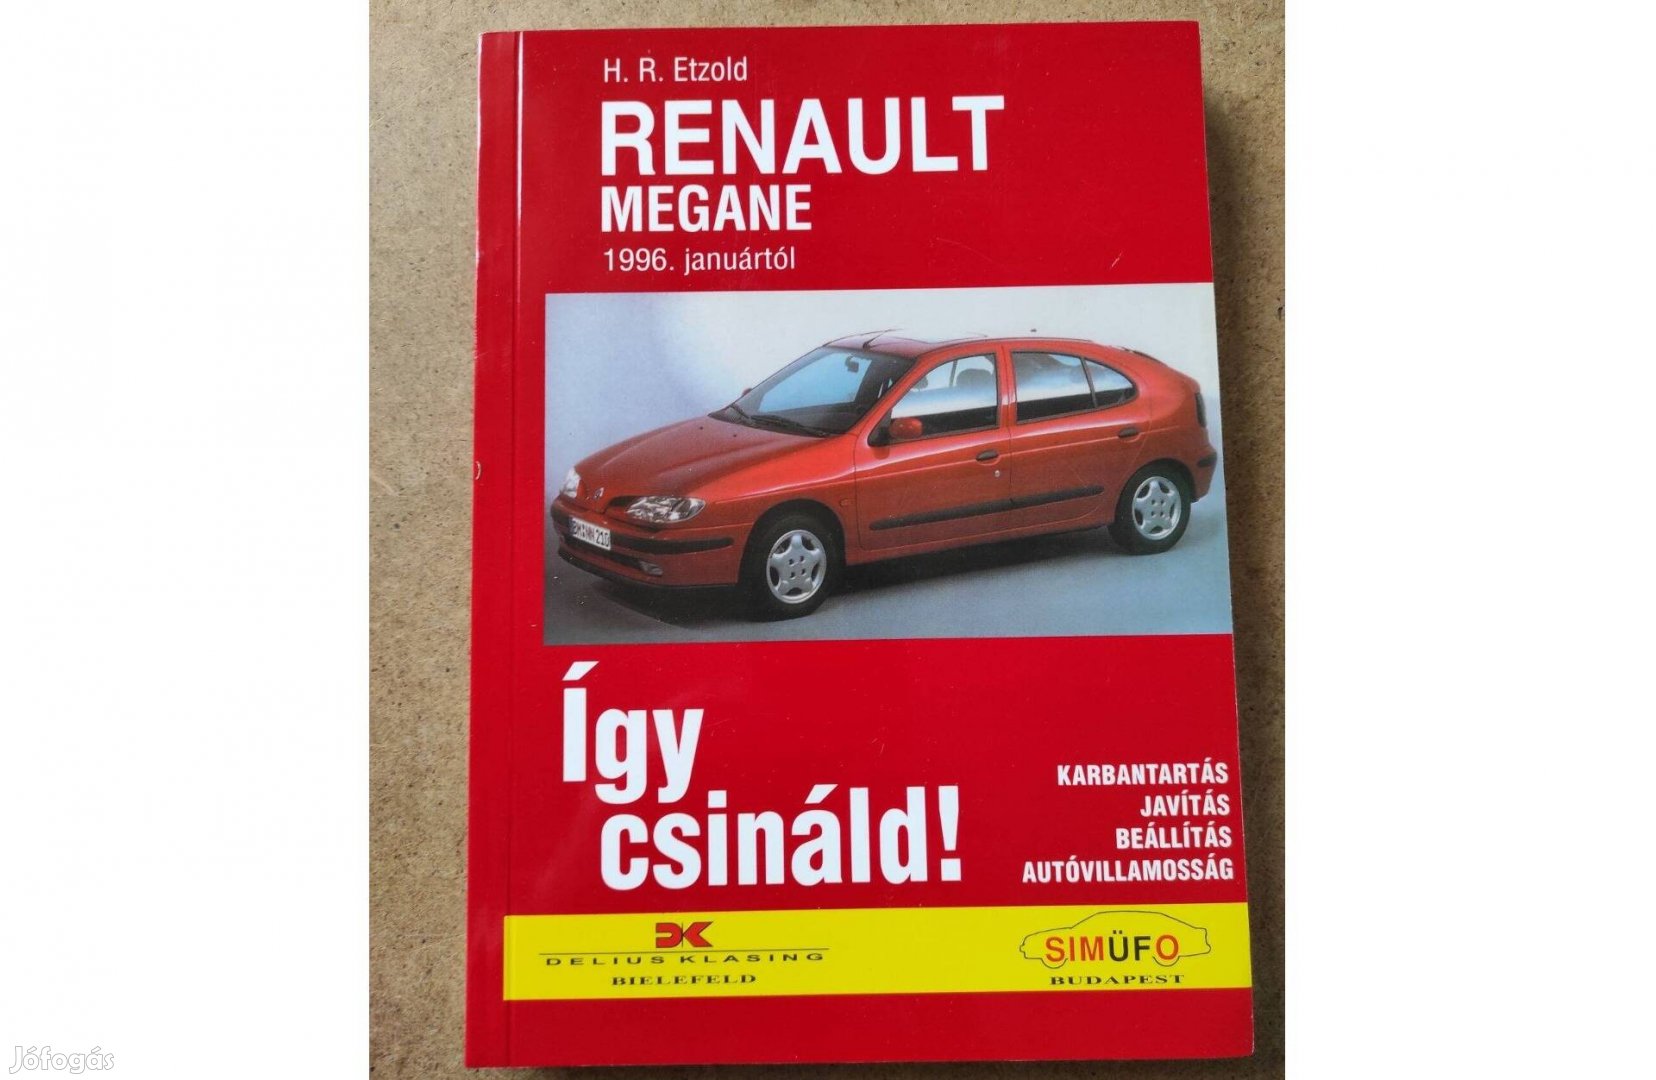 Renault Megane javítási karbantartási. Így csináld